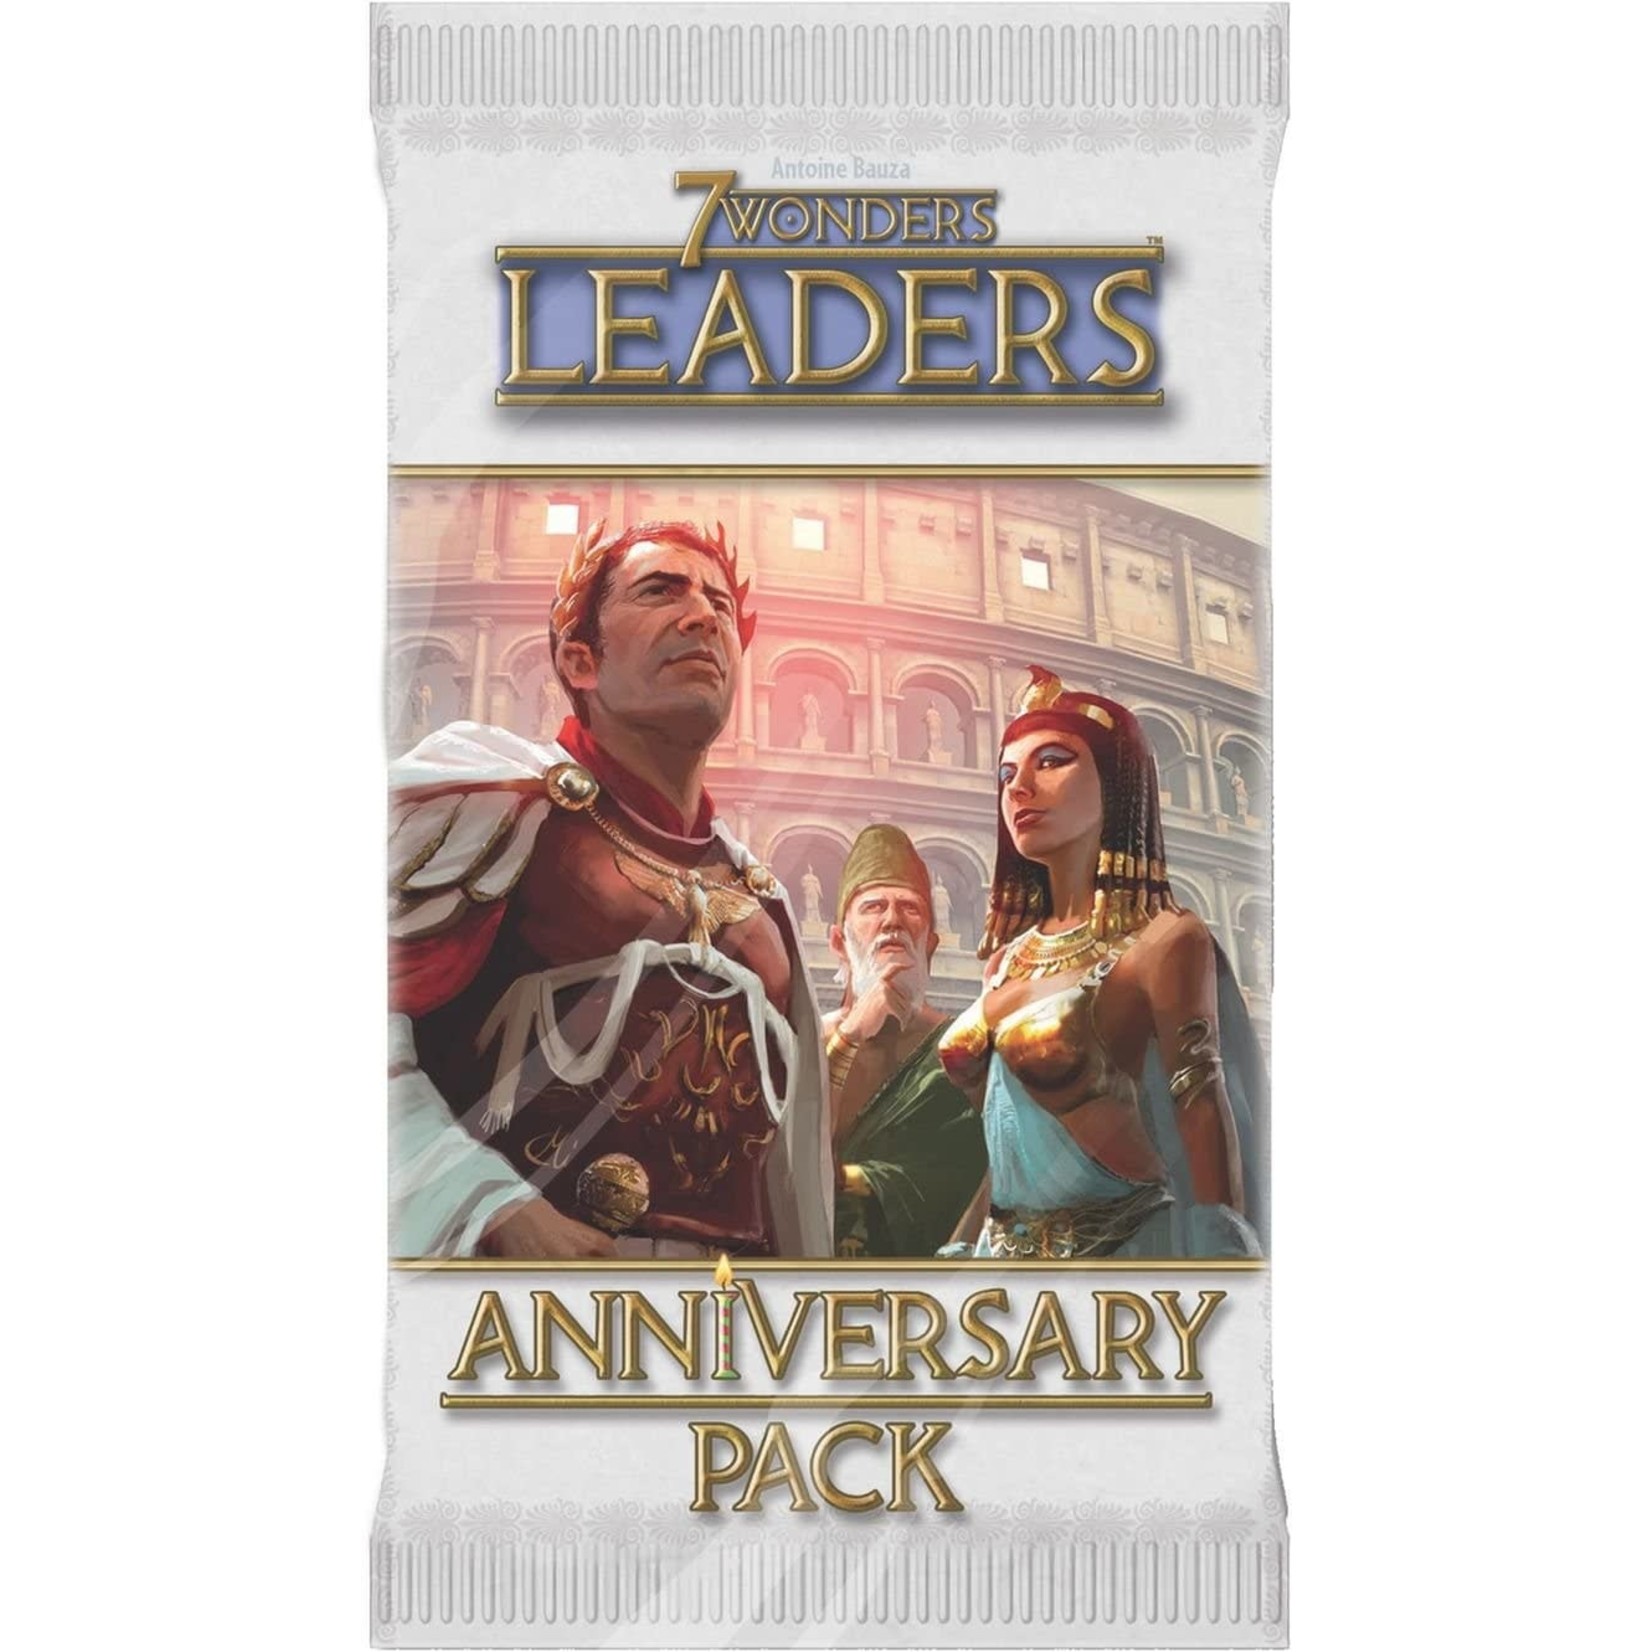 7 Wonders Leader Anniversary Pack